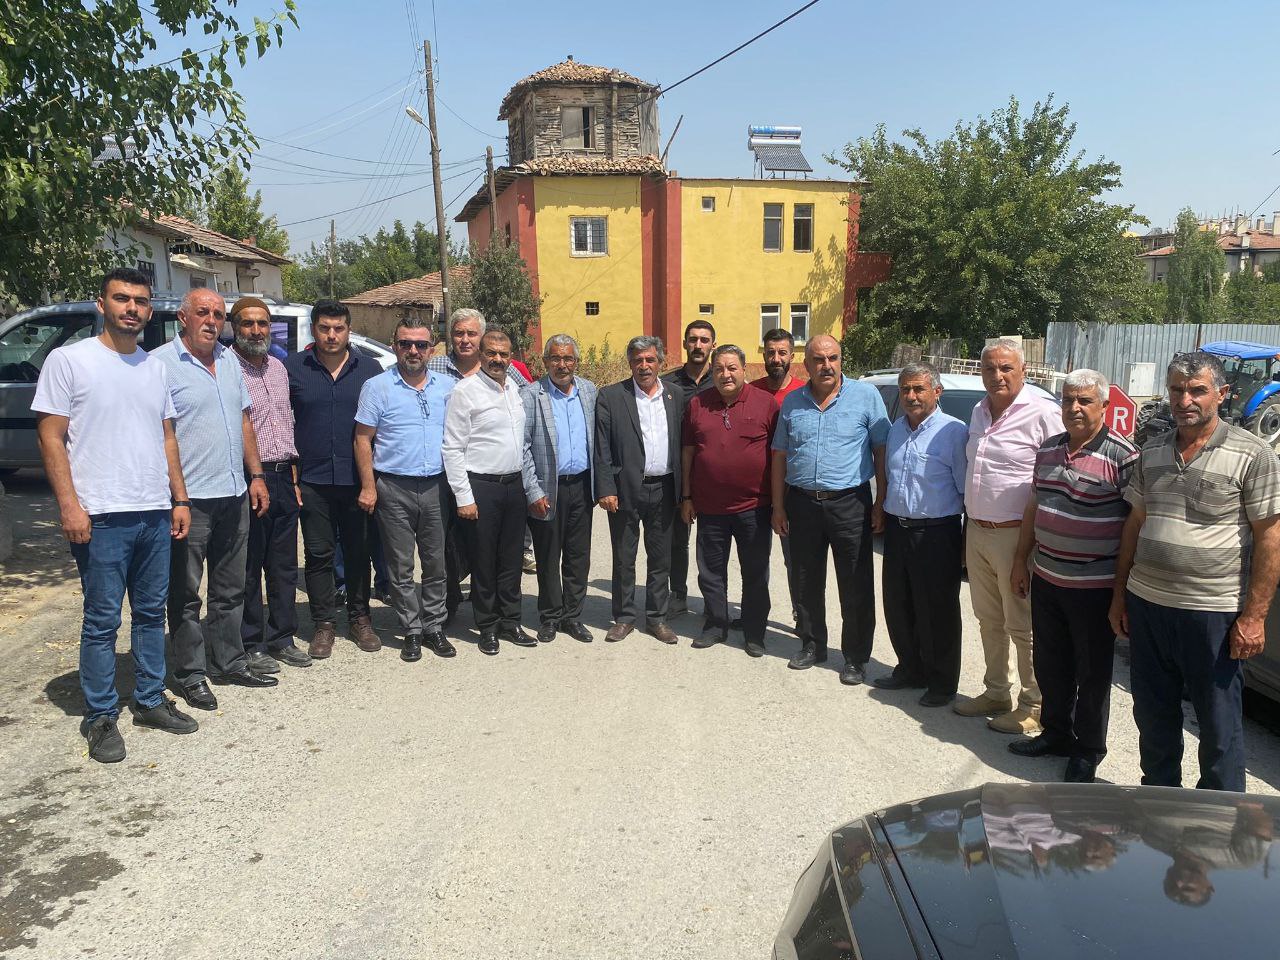 Milliyetçi Hareket Partisi (MHP) Malatya Milletvekili Mehmet Fendoğlu, MHP olarak seçimden sonra şimdiye kadar 420 köyü tek tek ziyaret ettiklerini, Battalgazi ve Yeşilyurt ilçesinin kalan köylerini de tek tek ziyaret etmeye başladıklarını bildirdi.